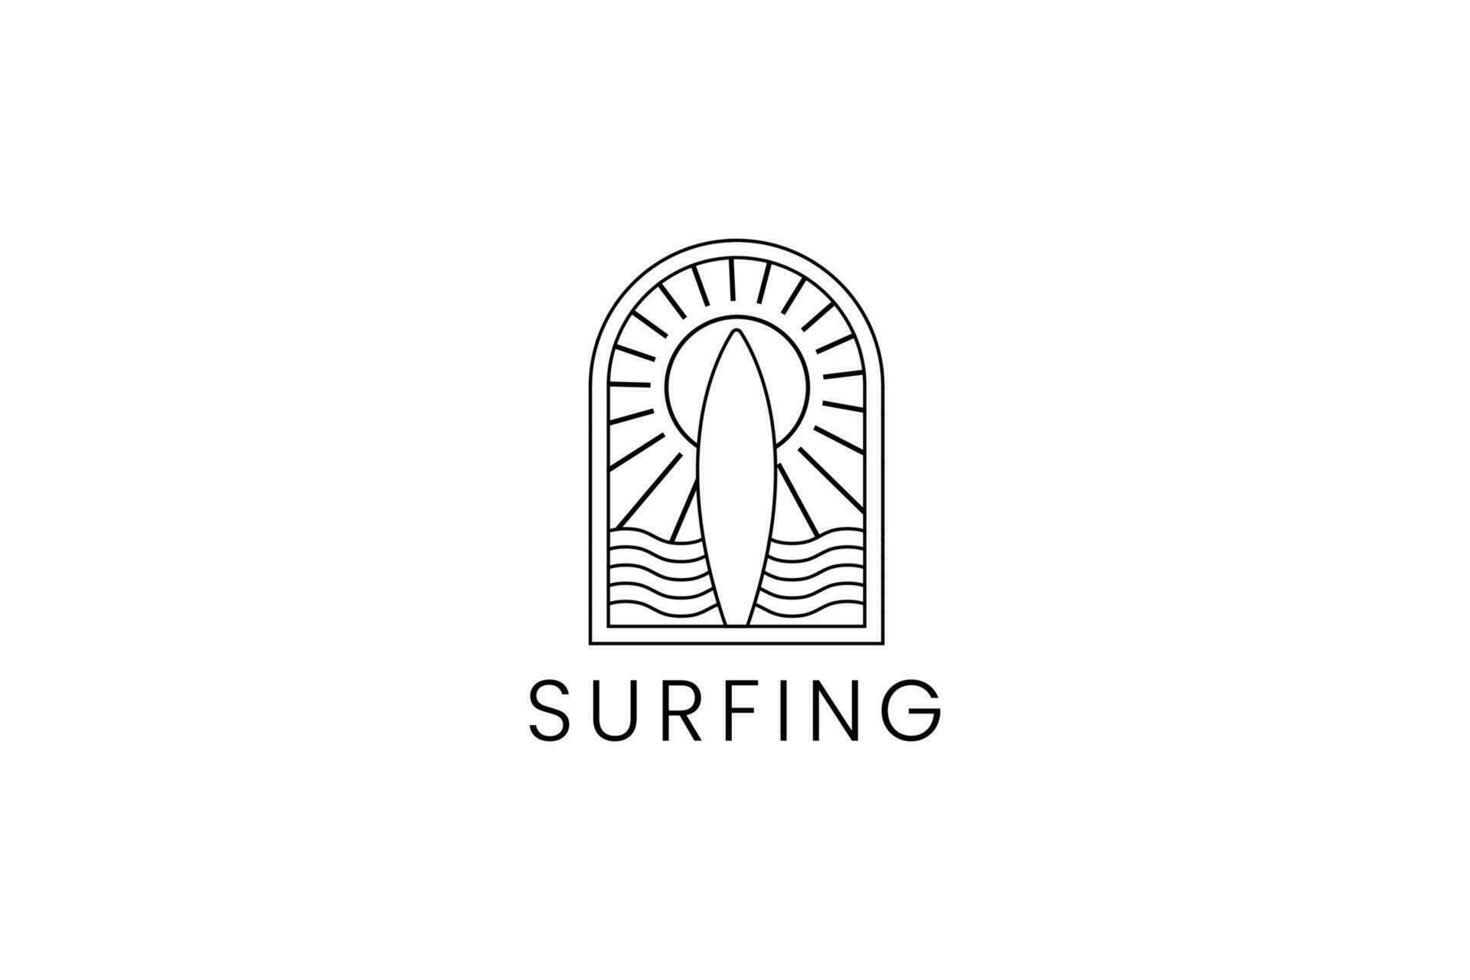 tavola da surf logo vettore icona illustrazione